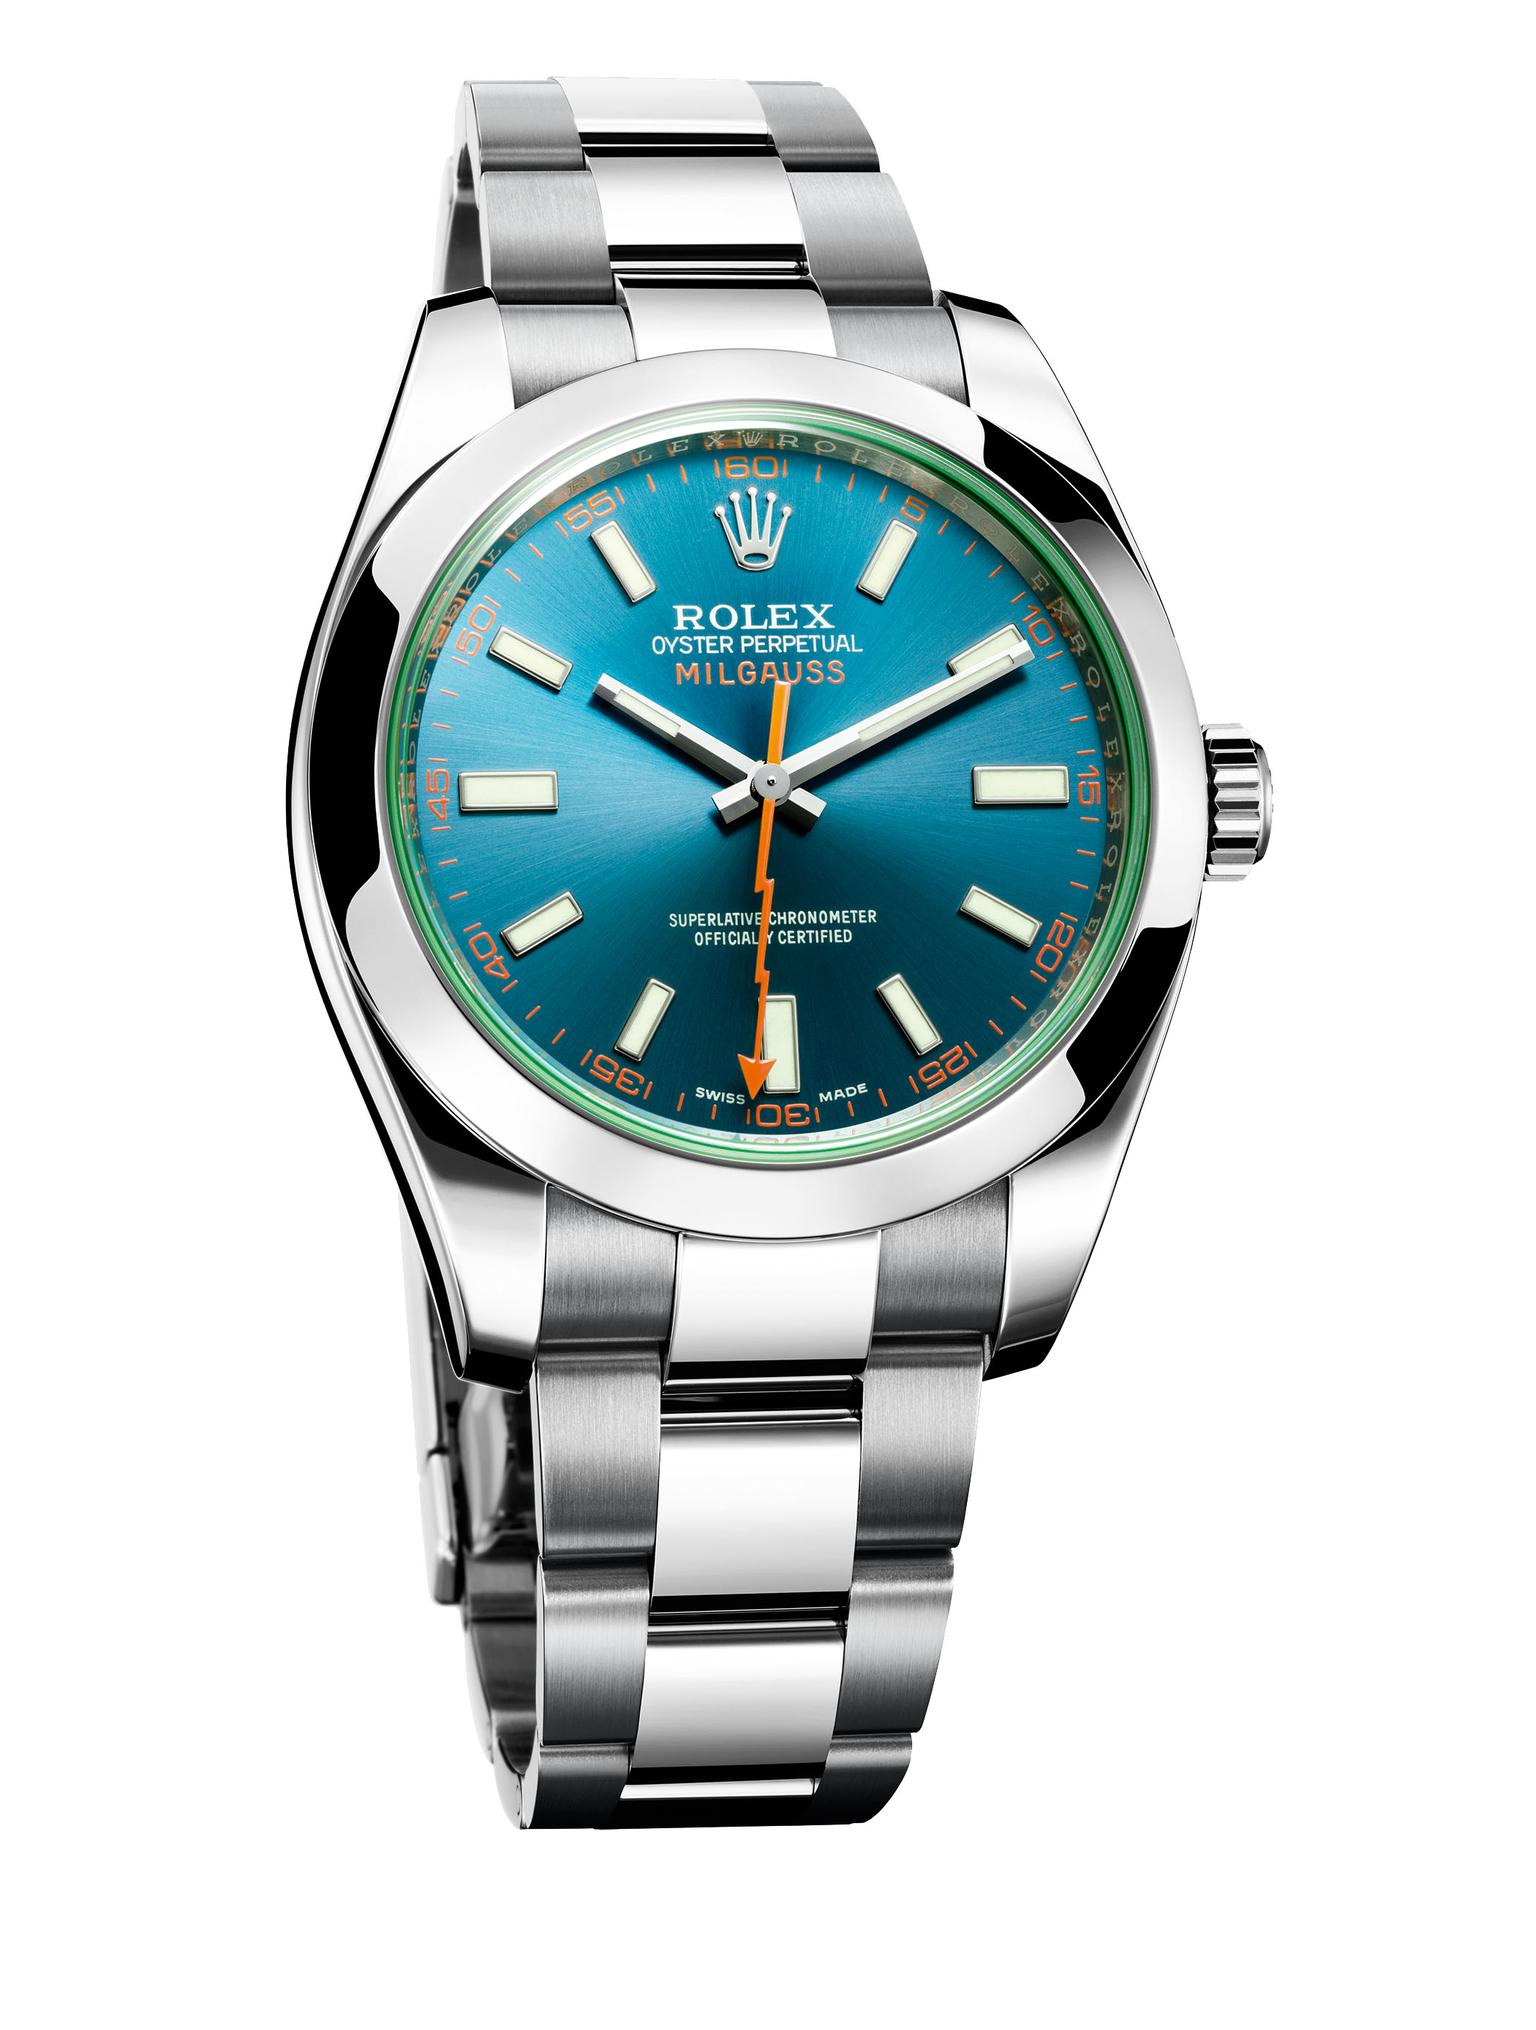 Rolex Milgauss watches: still going 